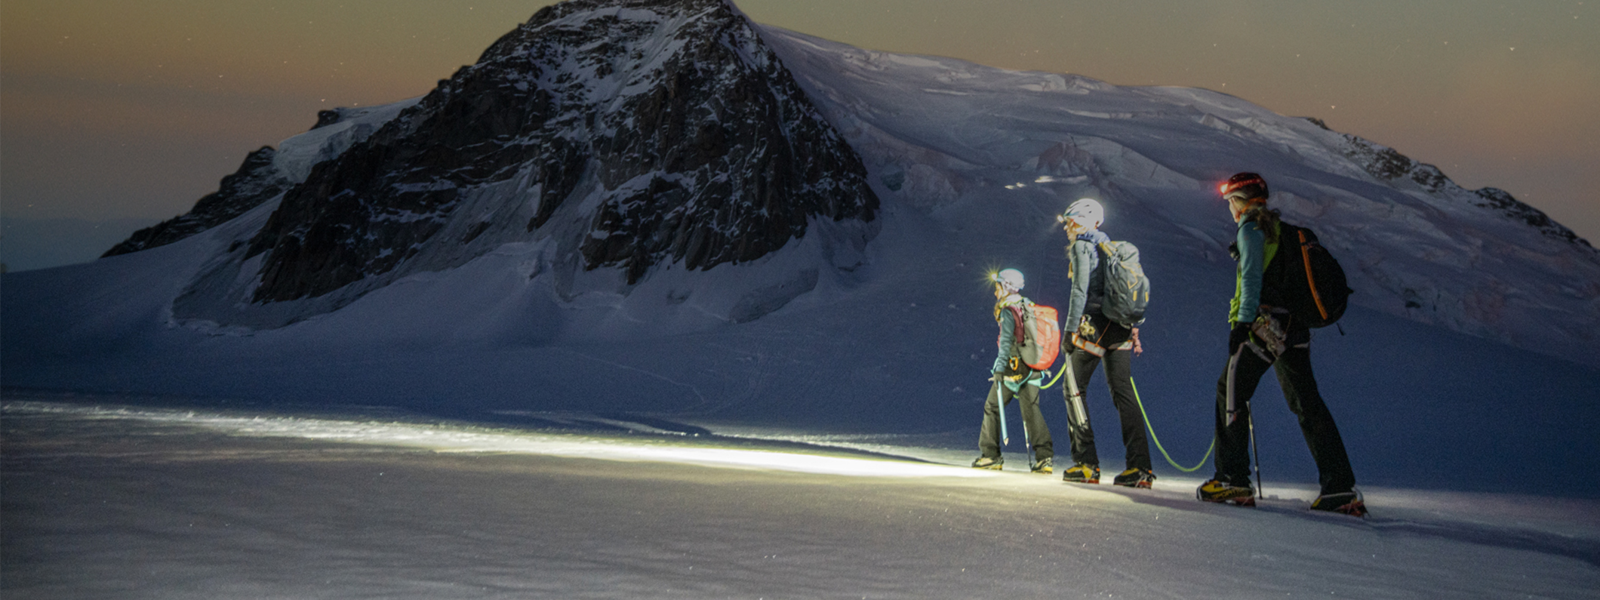 Três alpinistas atravessando uma montanha nevada sob um céu estrelado